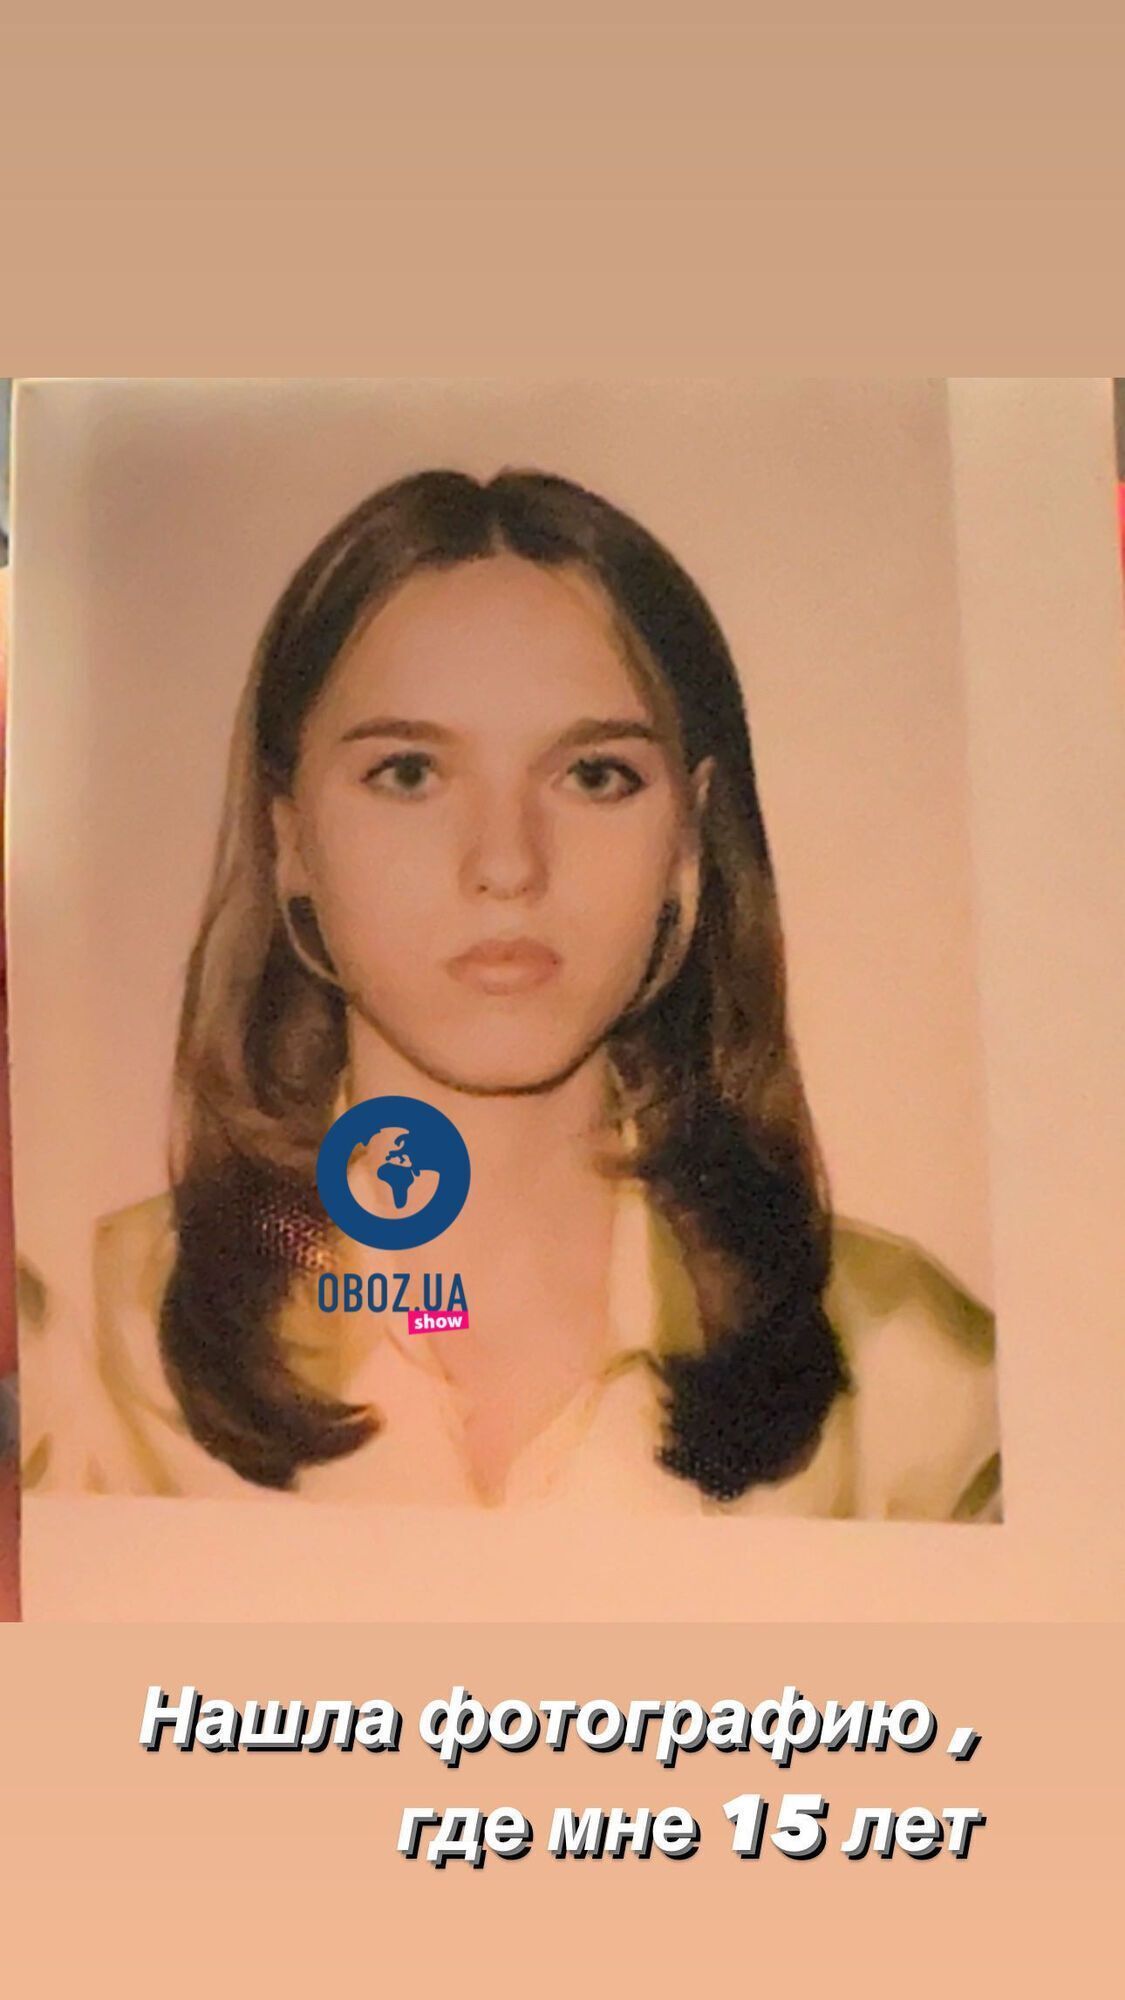 “Міс ДНР“ до та після пластики: блогерка з Донецька показала, як змінилося її обличчя